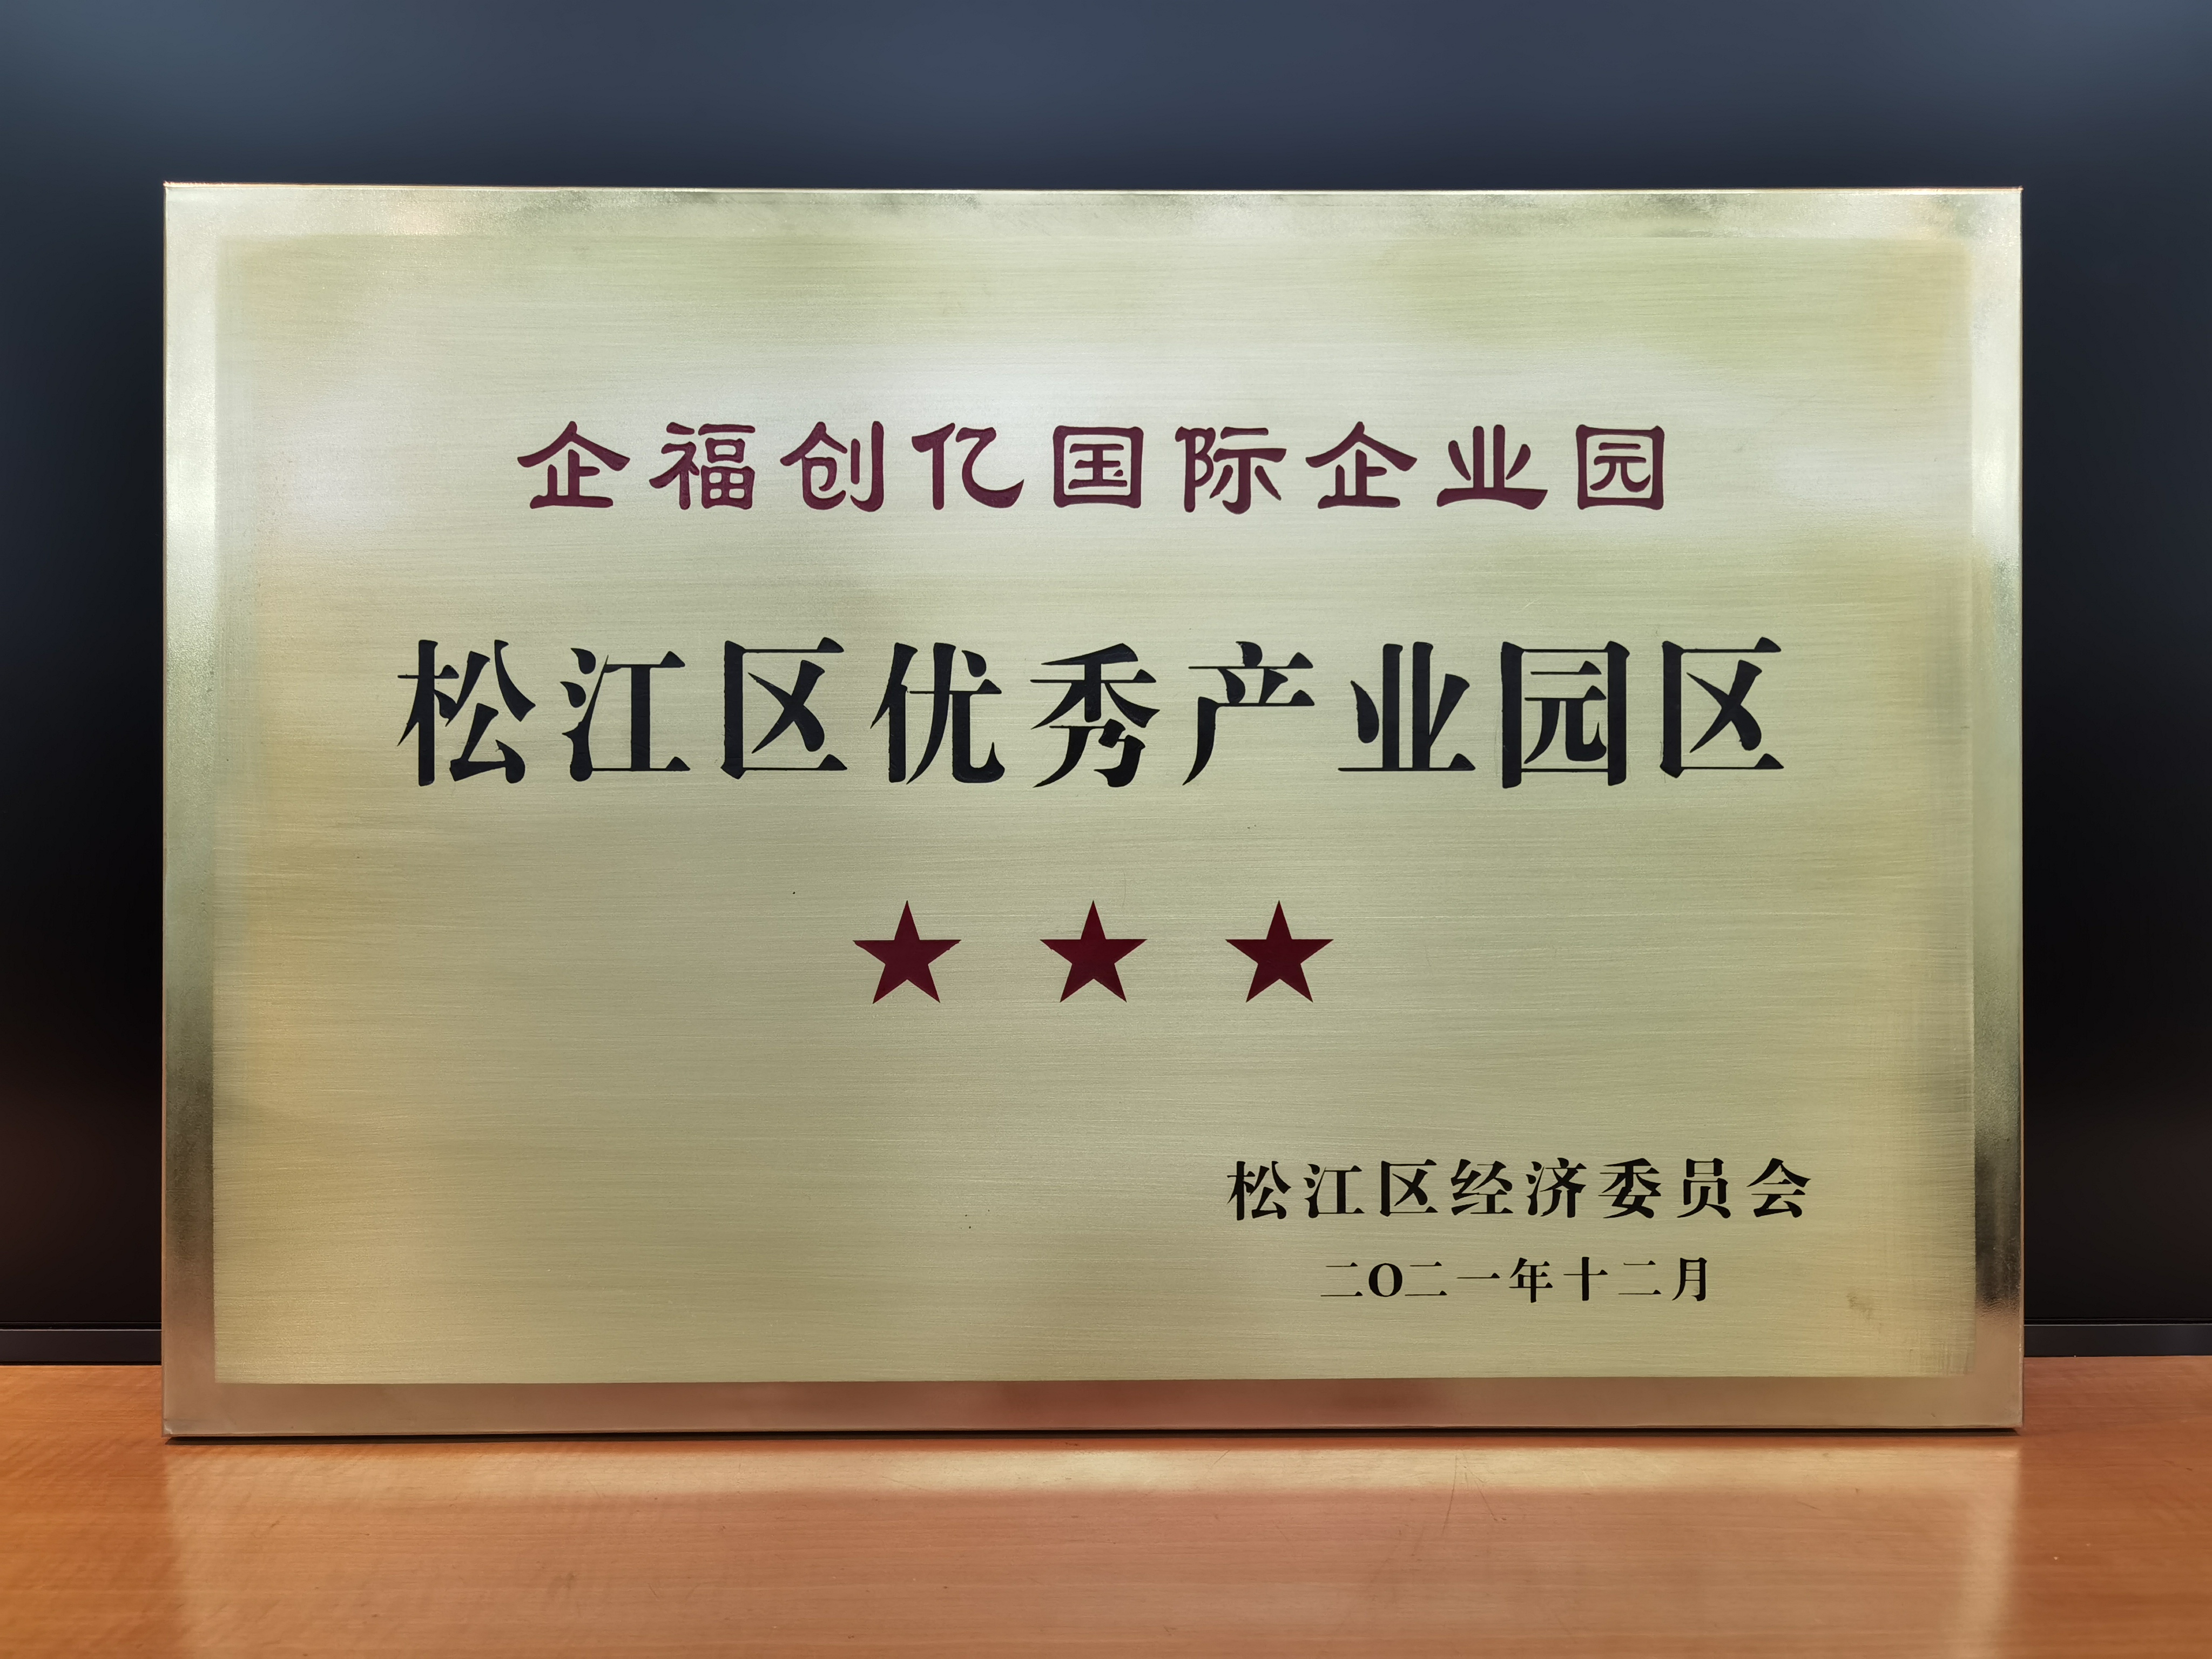 企福创亿国际企业园获评“松江区三星级优秀产业园区”